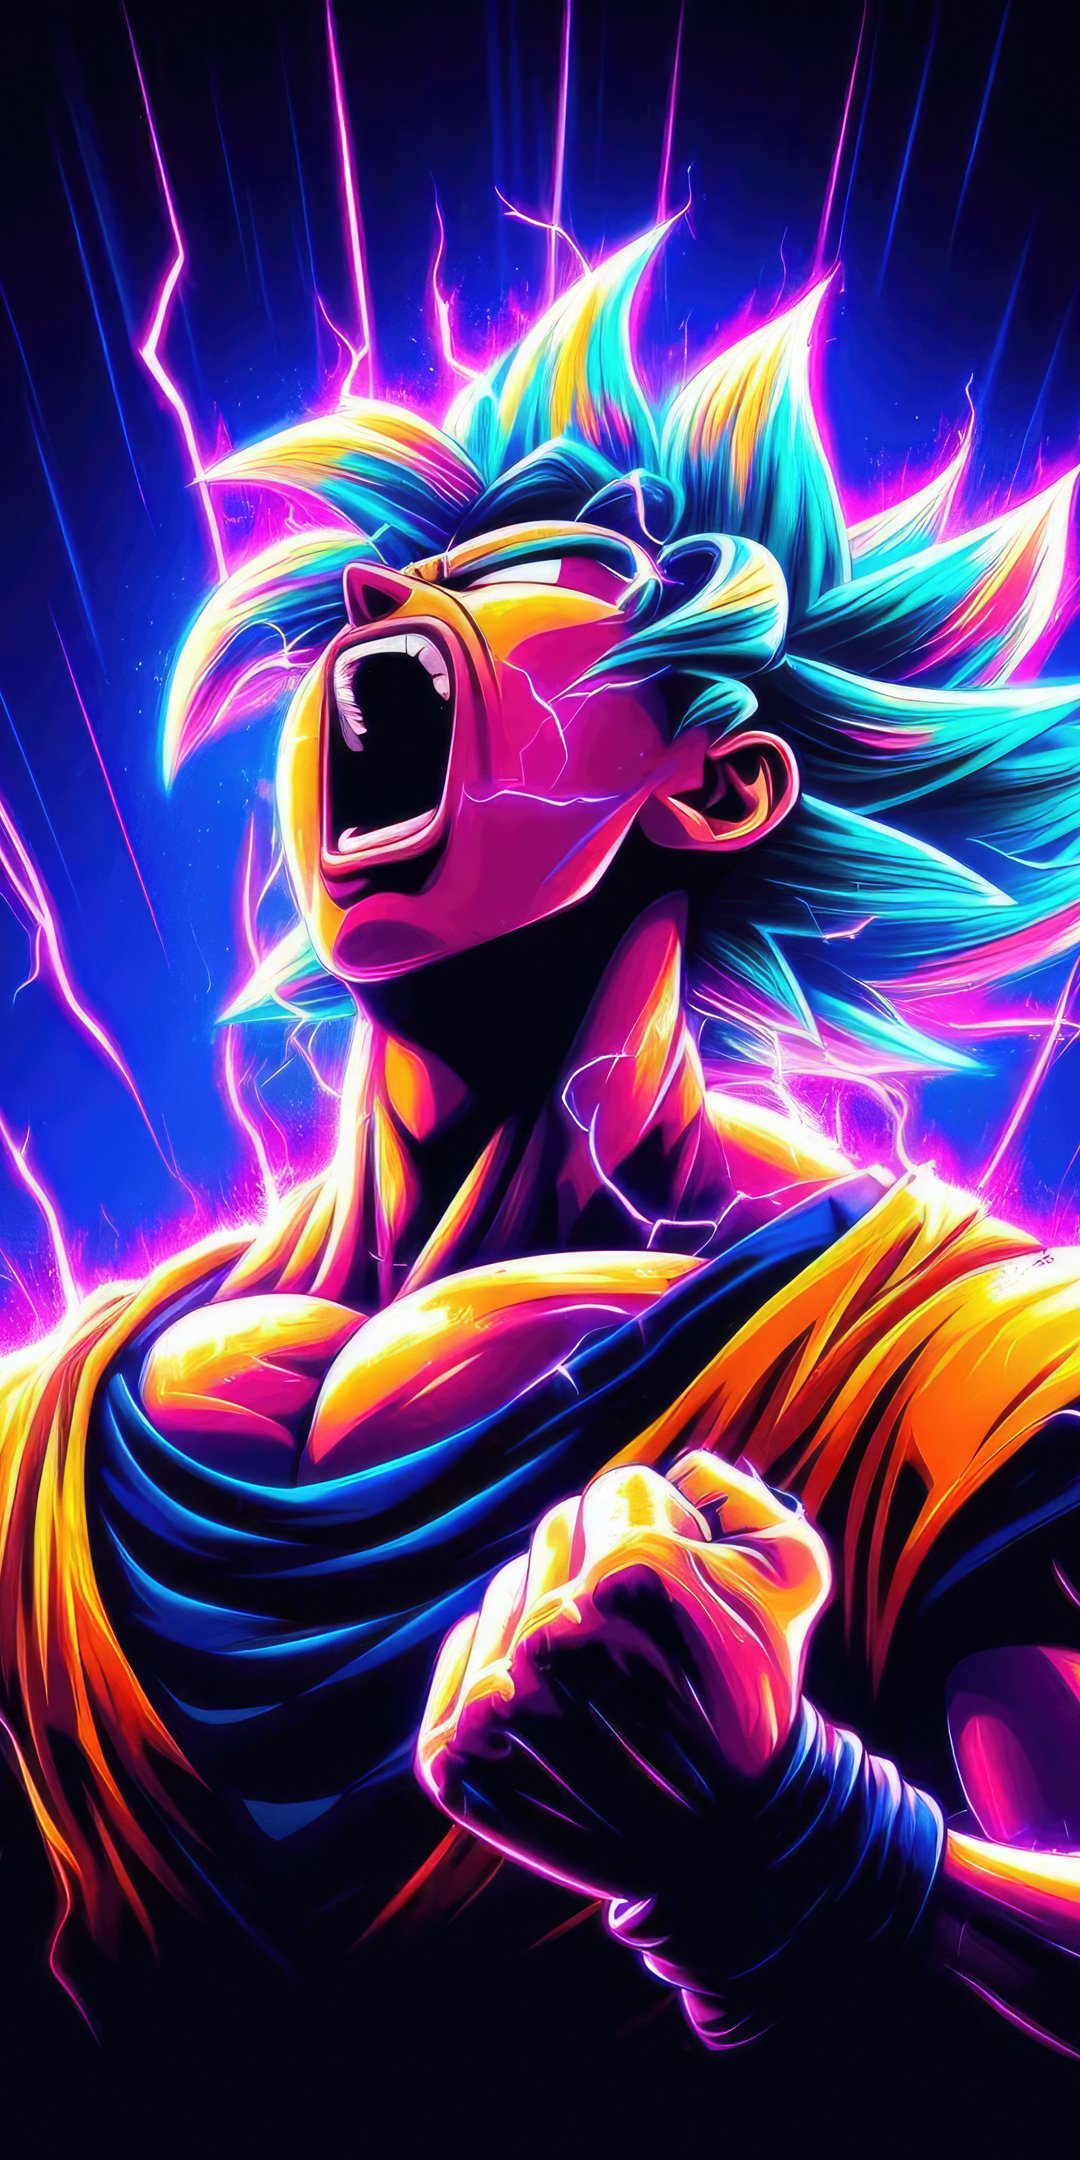 Son Goku ultimate form, powerful anime, fan art, 1080x2160 wallpaper